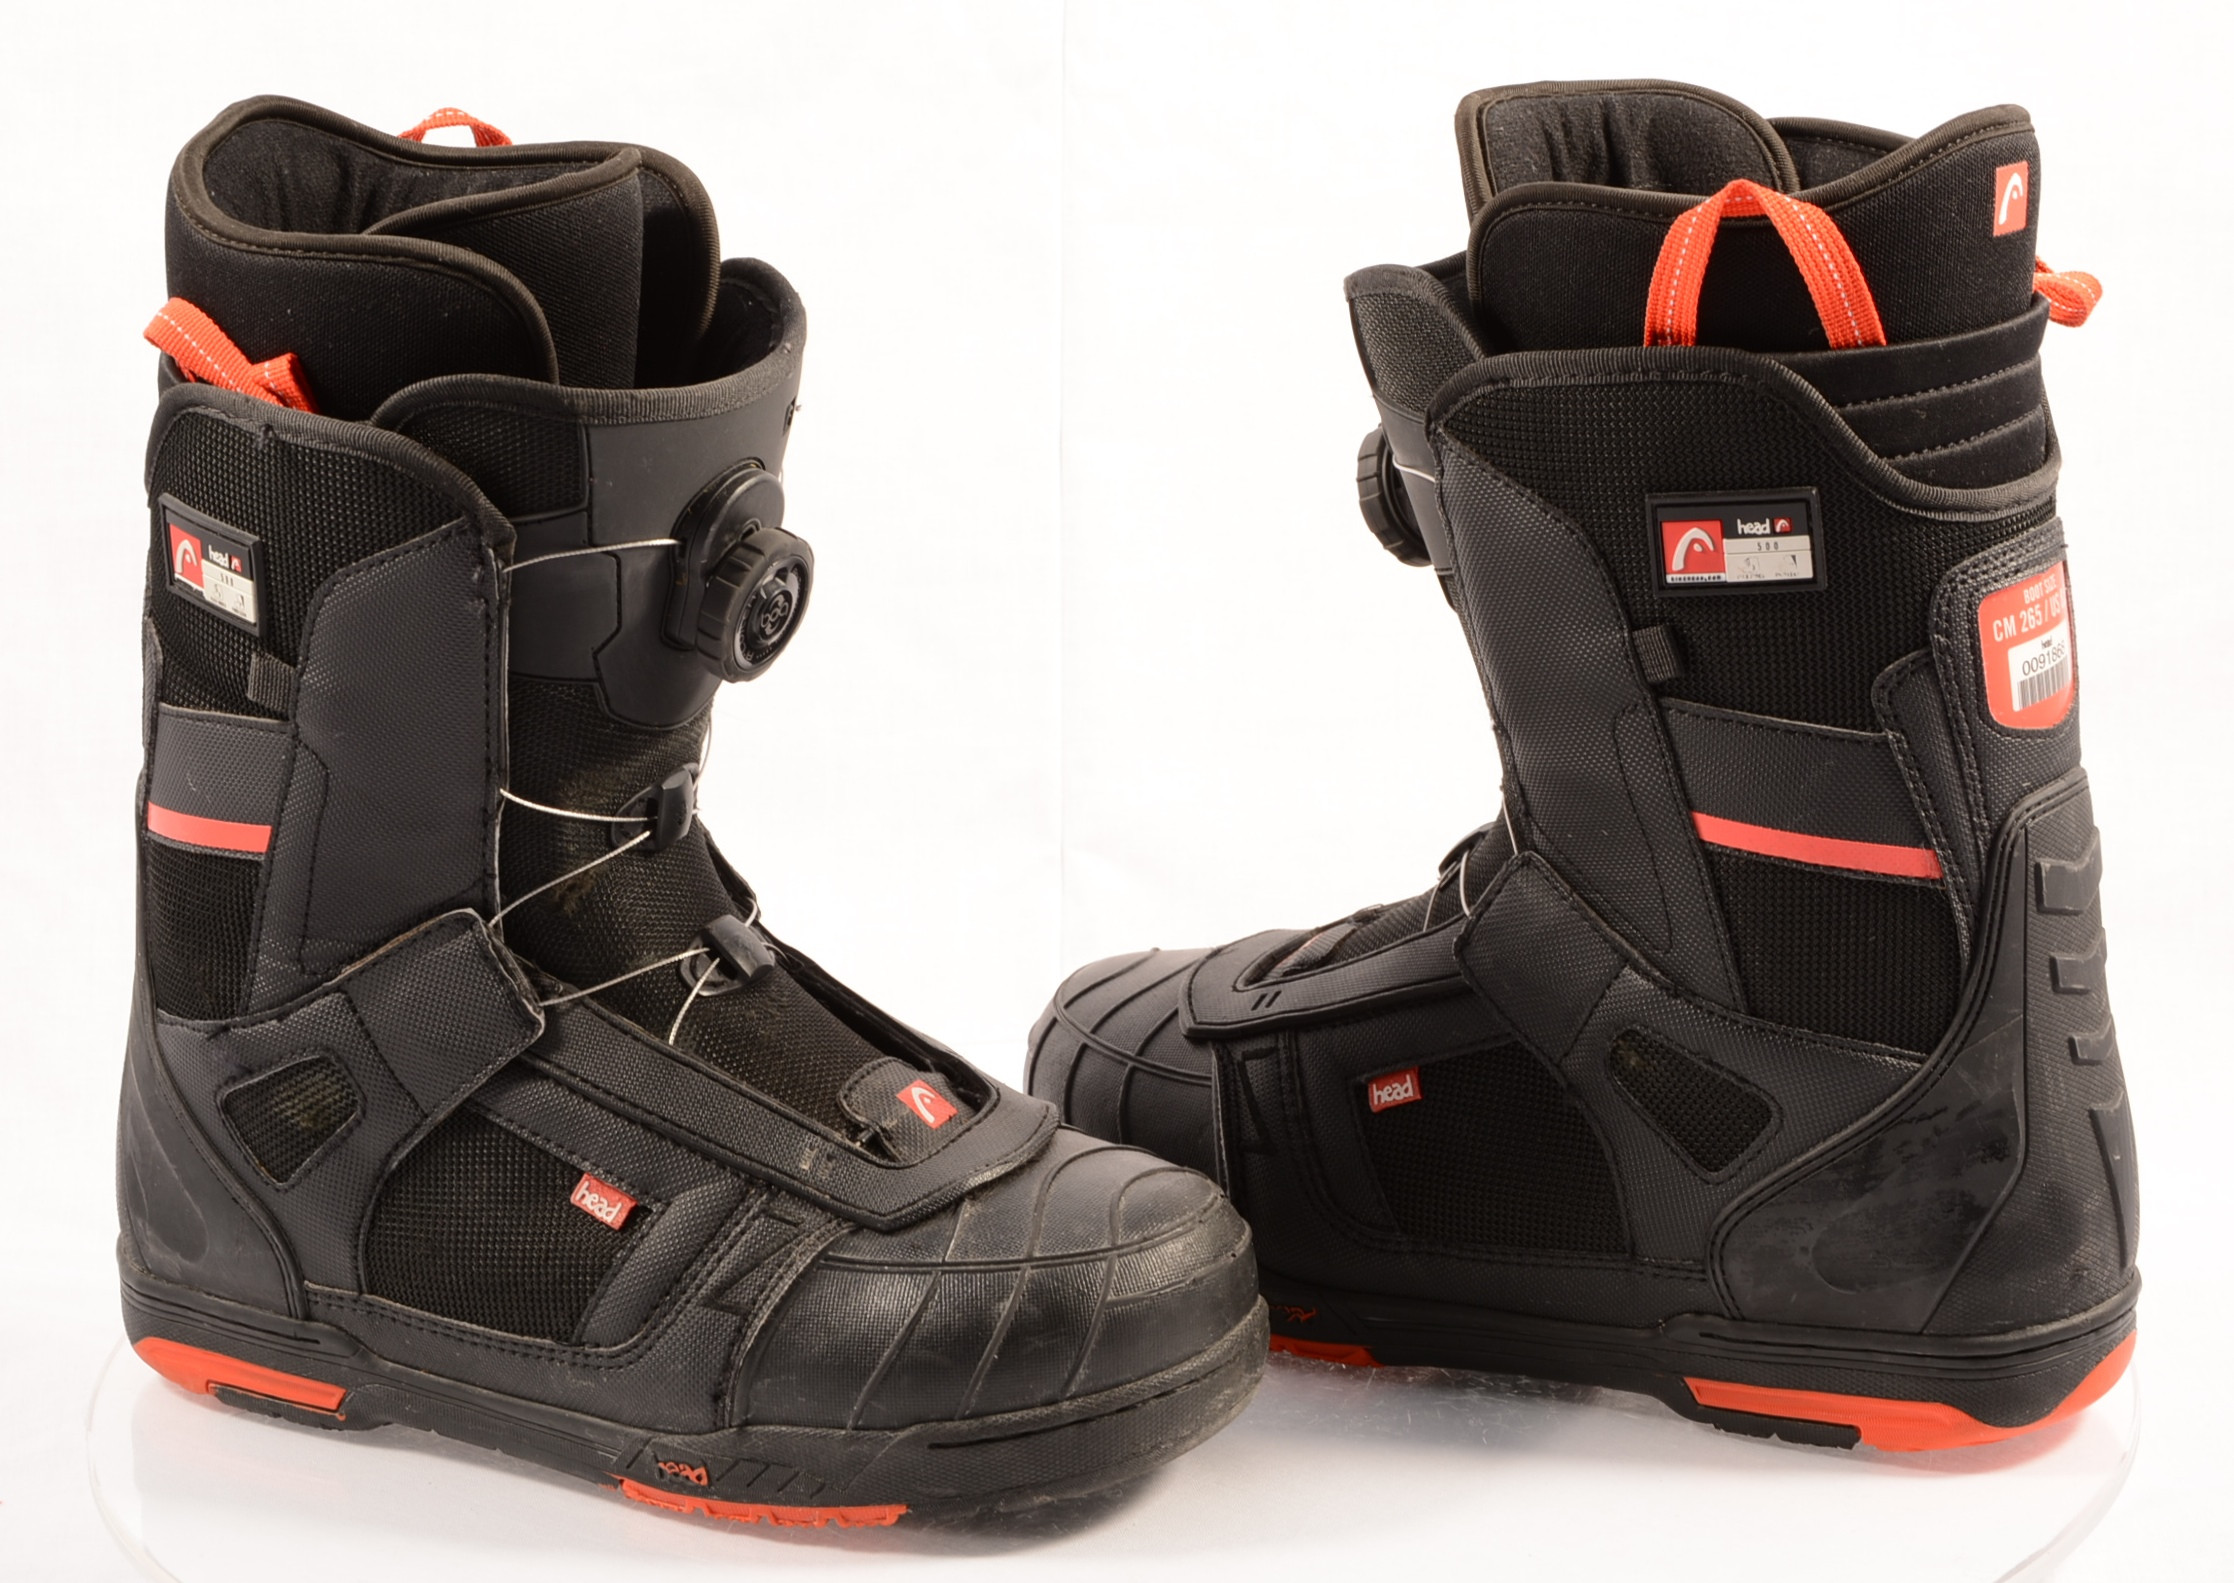 levering aan huis Wennen aan Gepensioneerde snowboard boots HEAD 500 4D BOA tech, POLYGIENE, BLACK/red ( TOP condition  ) - Mardosport.com